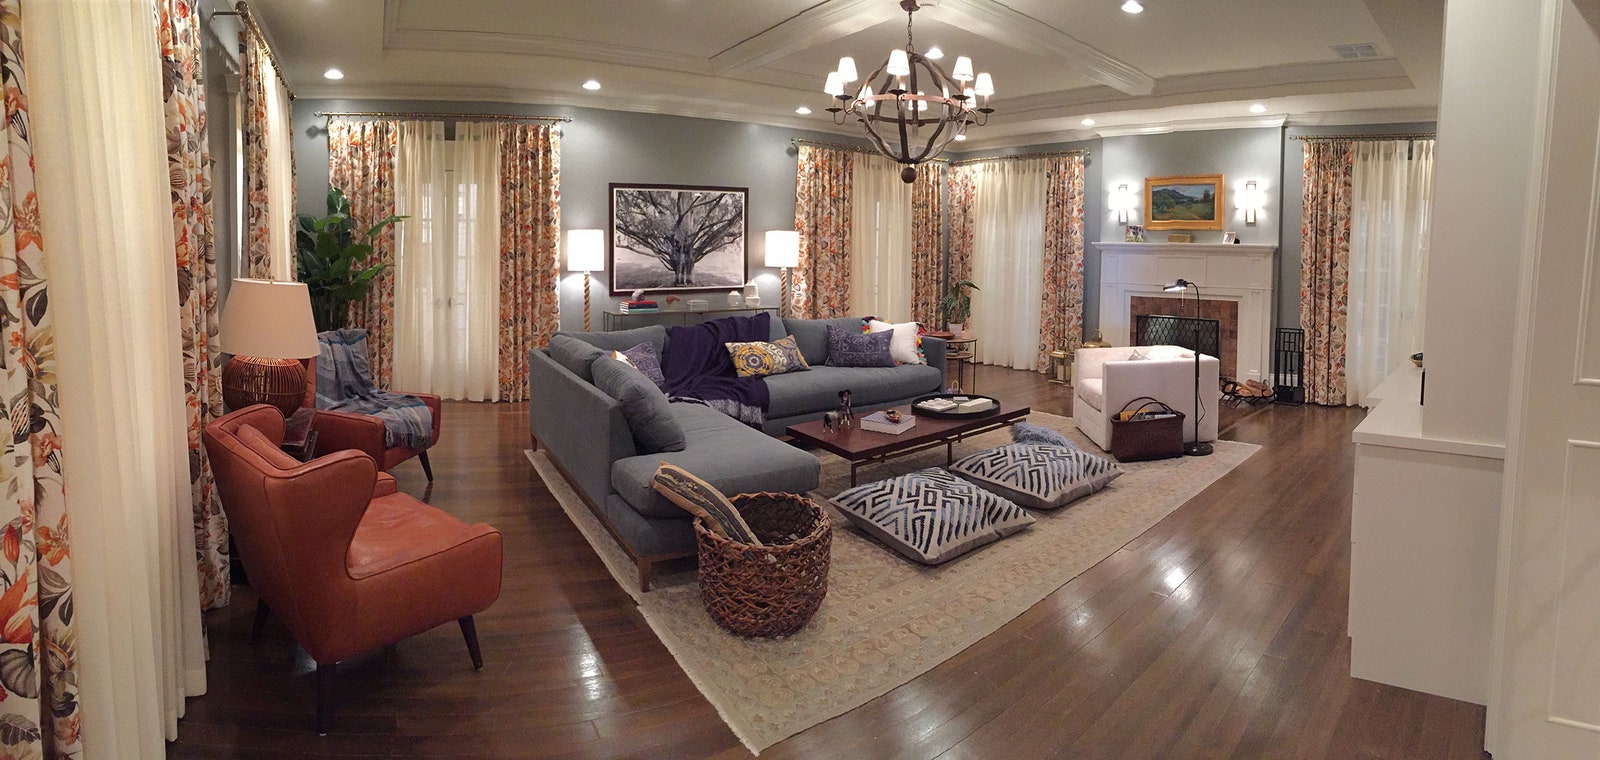 Randall's living room